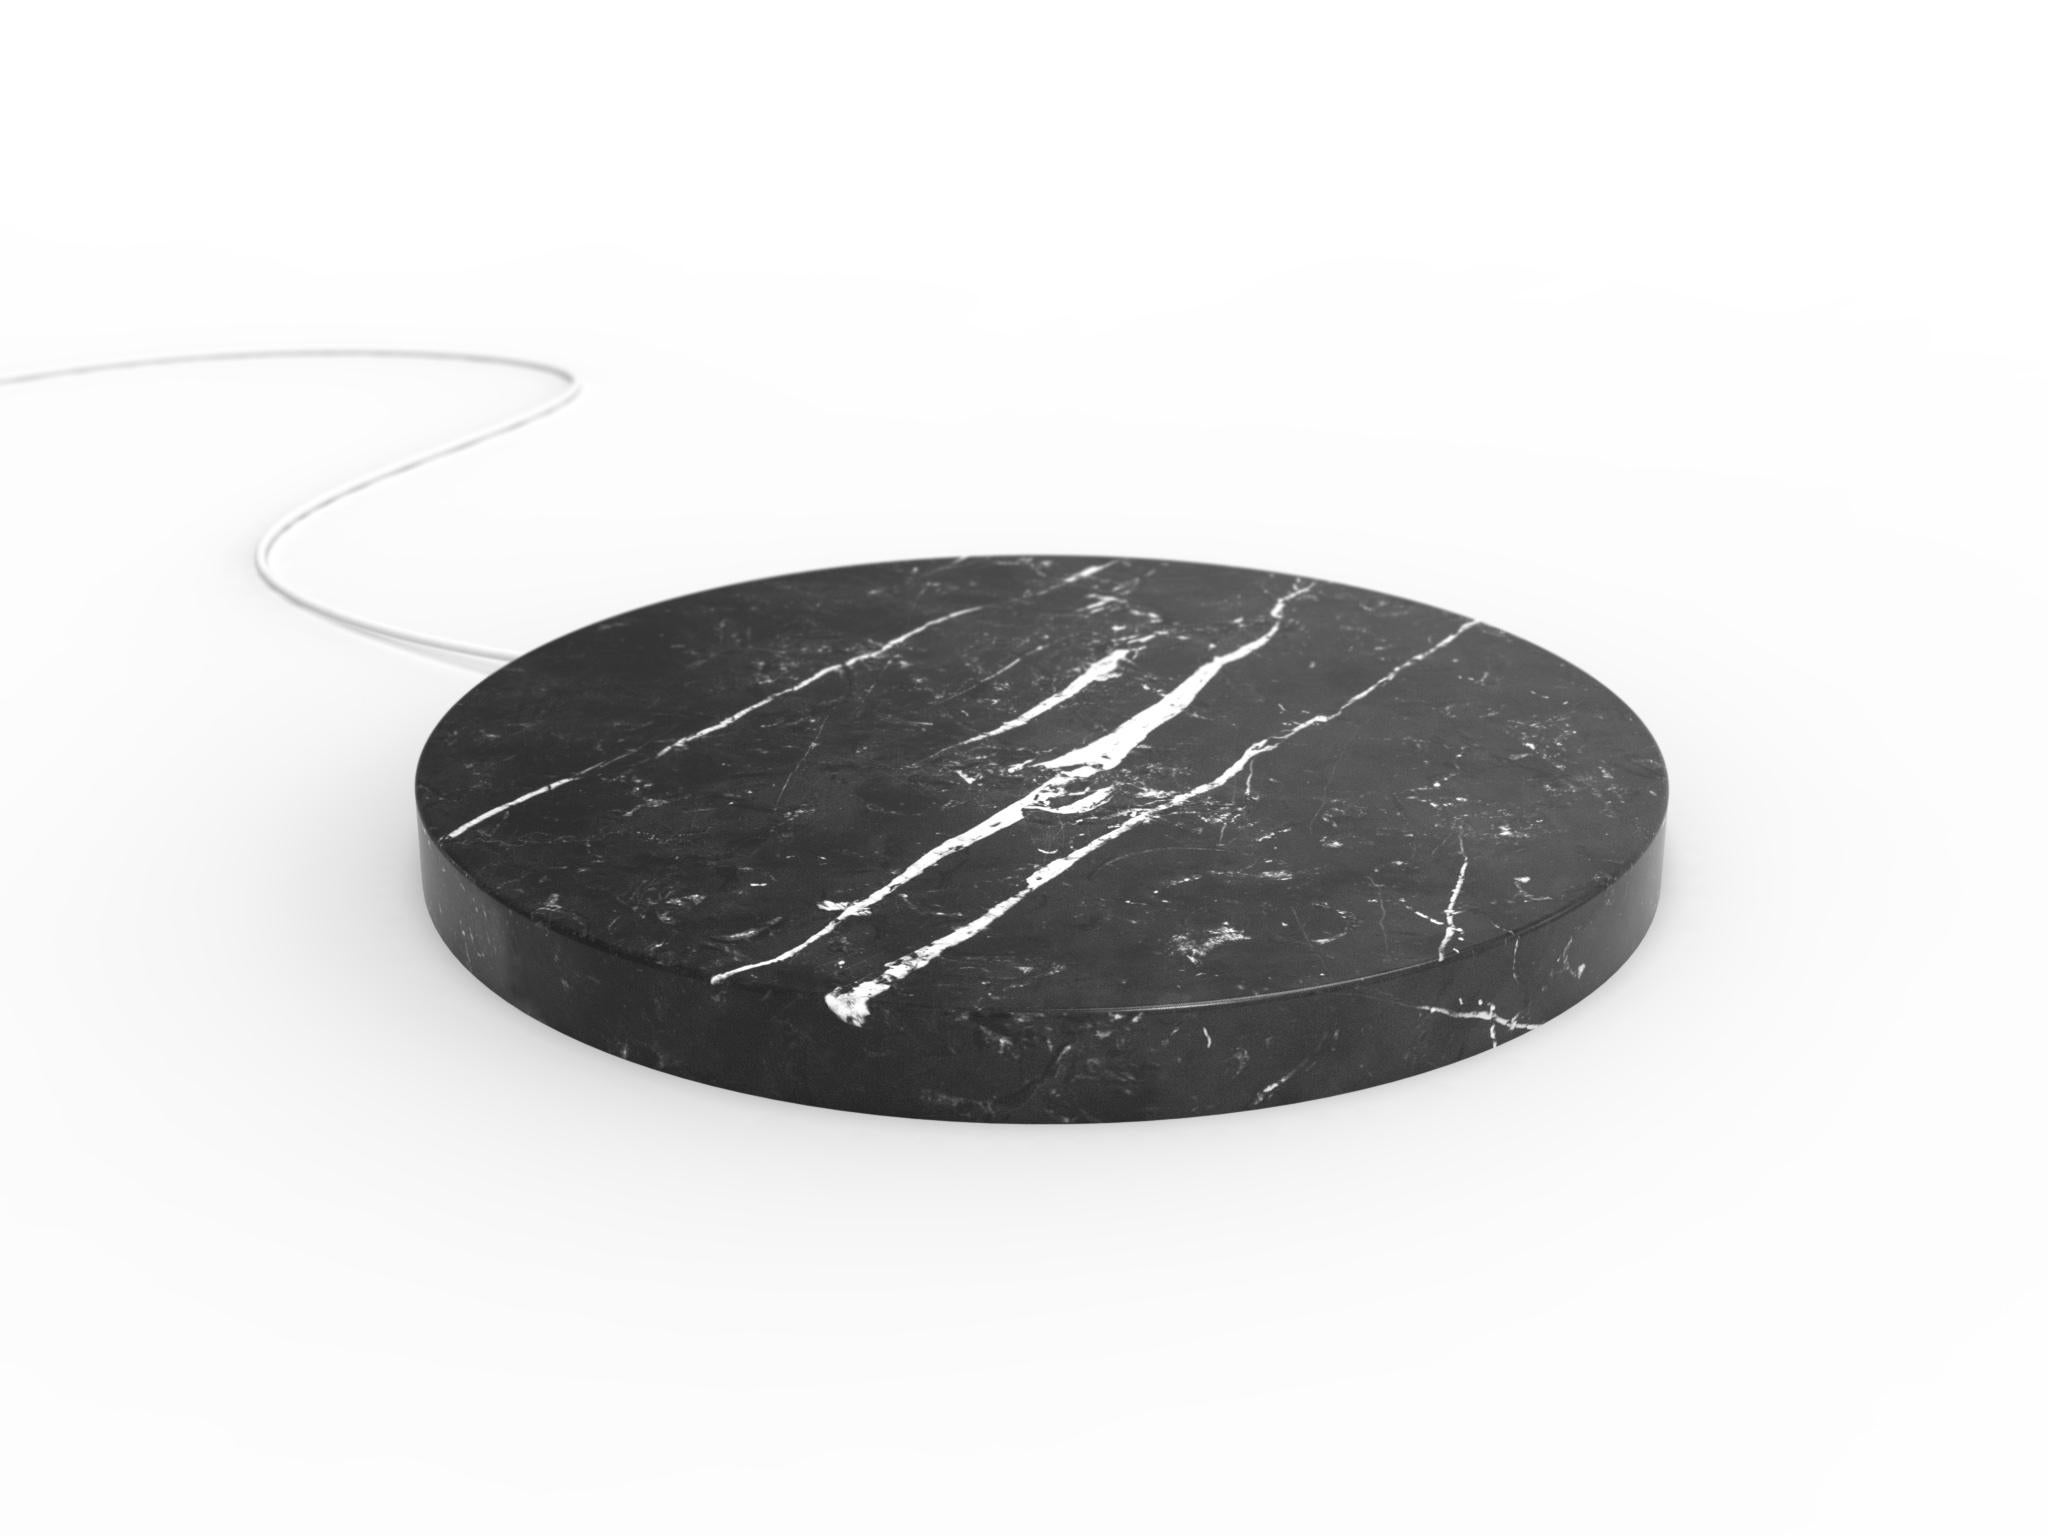 Un socle en marbre,
qui rechargent rapidement votre téléphone, d'un coup de baguette magique.
 
Un cercle, 
une pierre, 
réalisé avec le soin que requiert le marbre.

Une puissante technologie de charge sans fil garantit une alimentation électrique